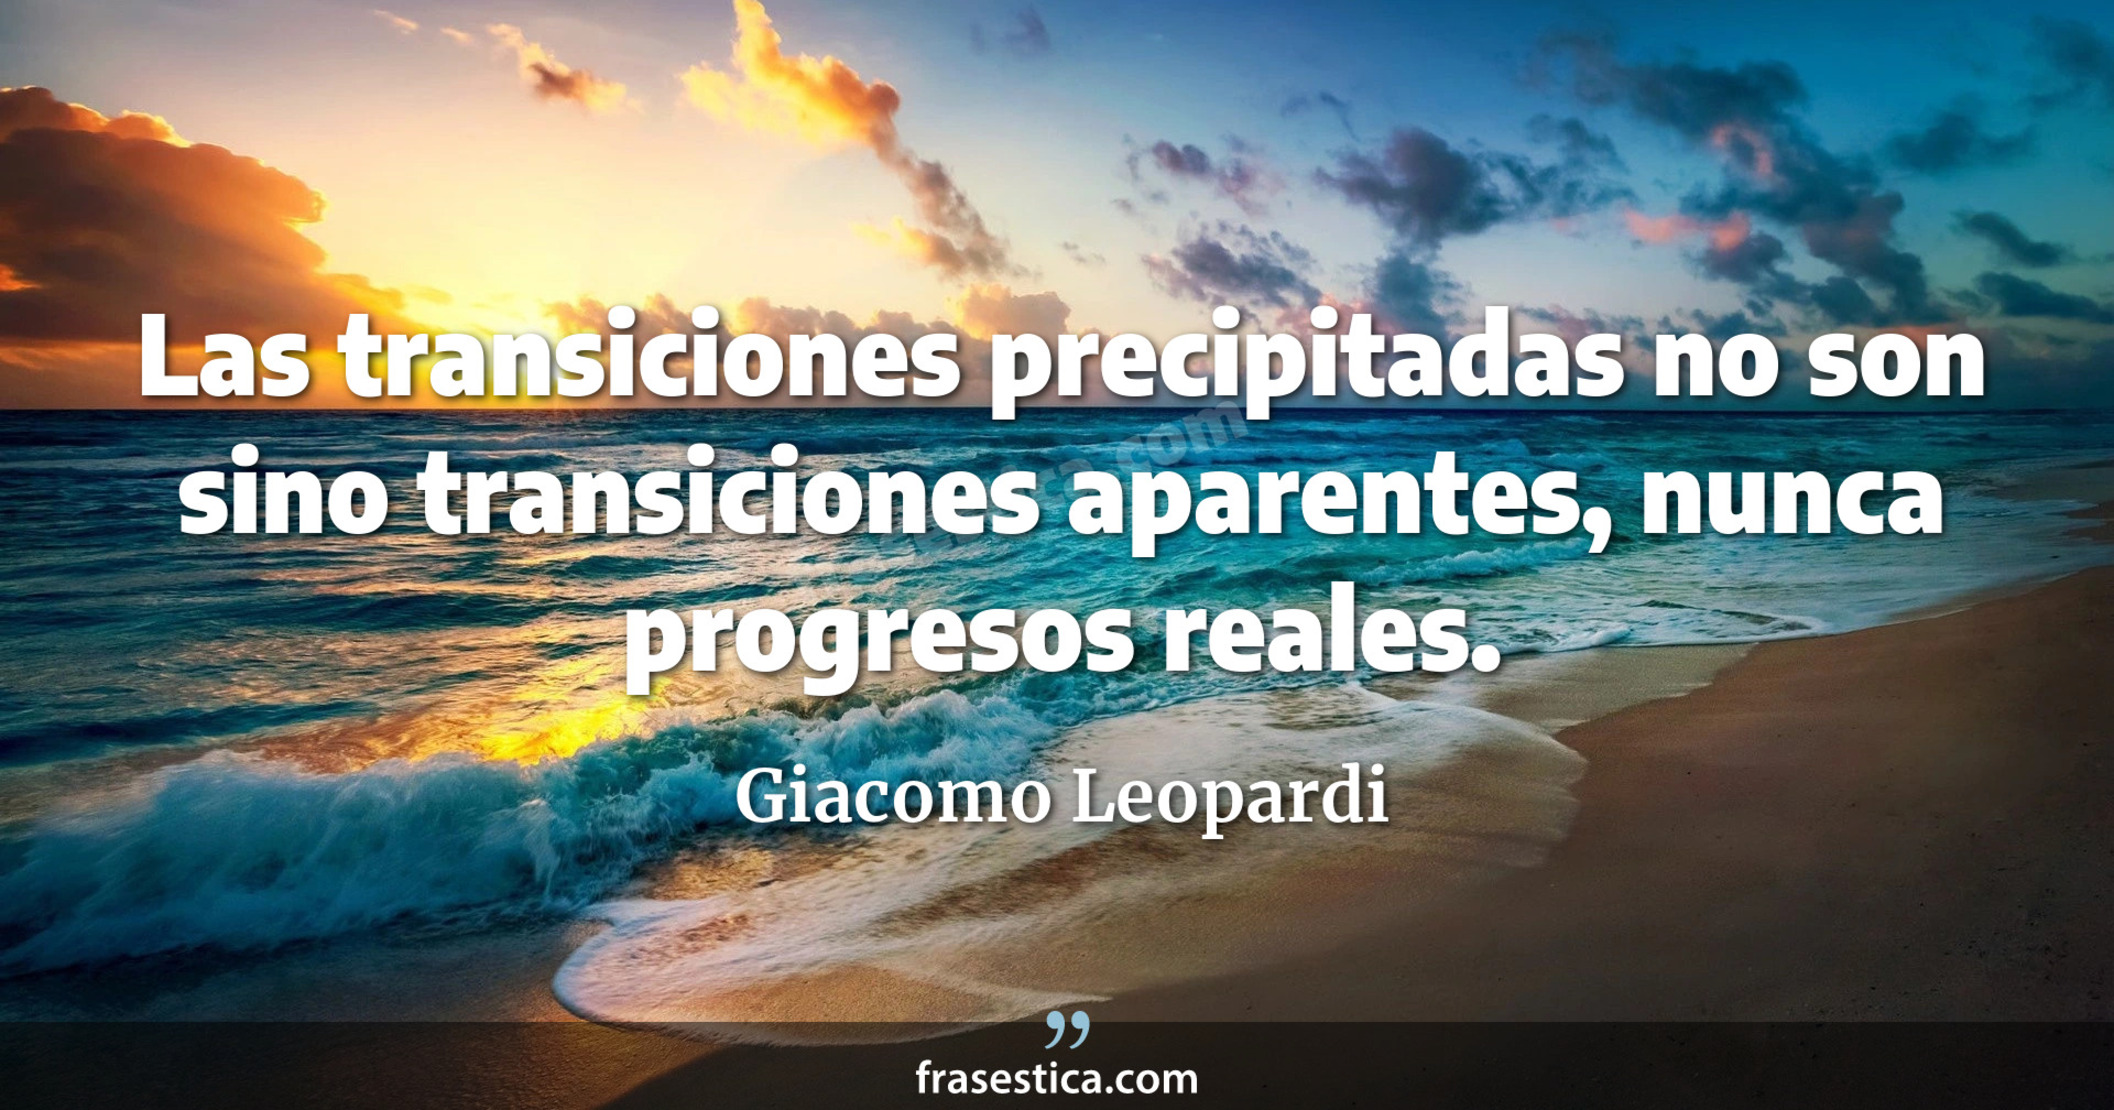 Las transiciones precipitadas no son sino transiciones aparentes, nunca progresos reales. - Giacomo Leopardi